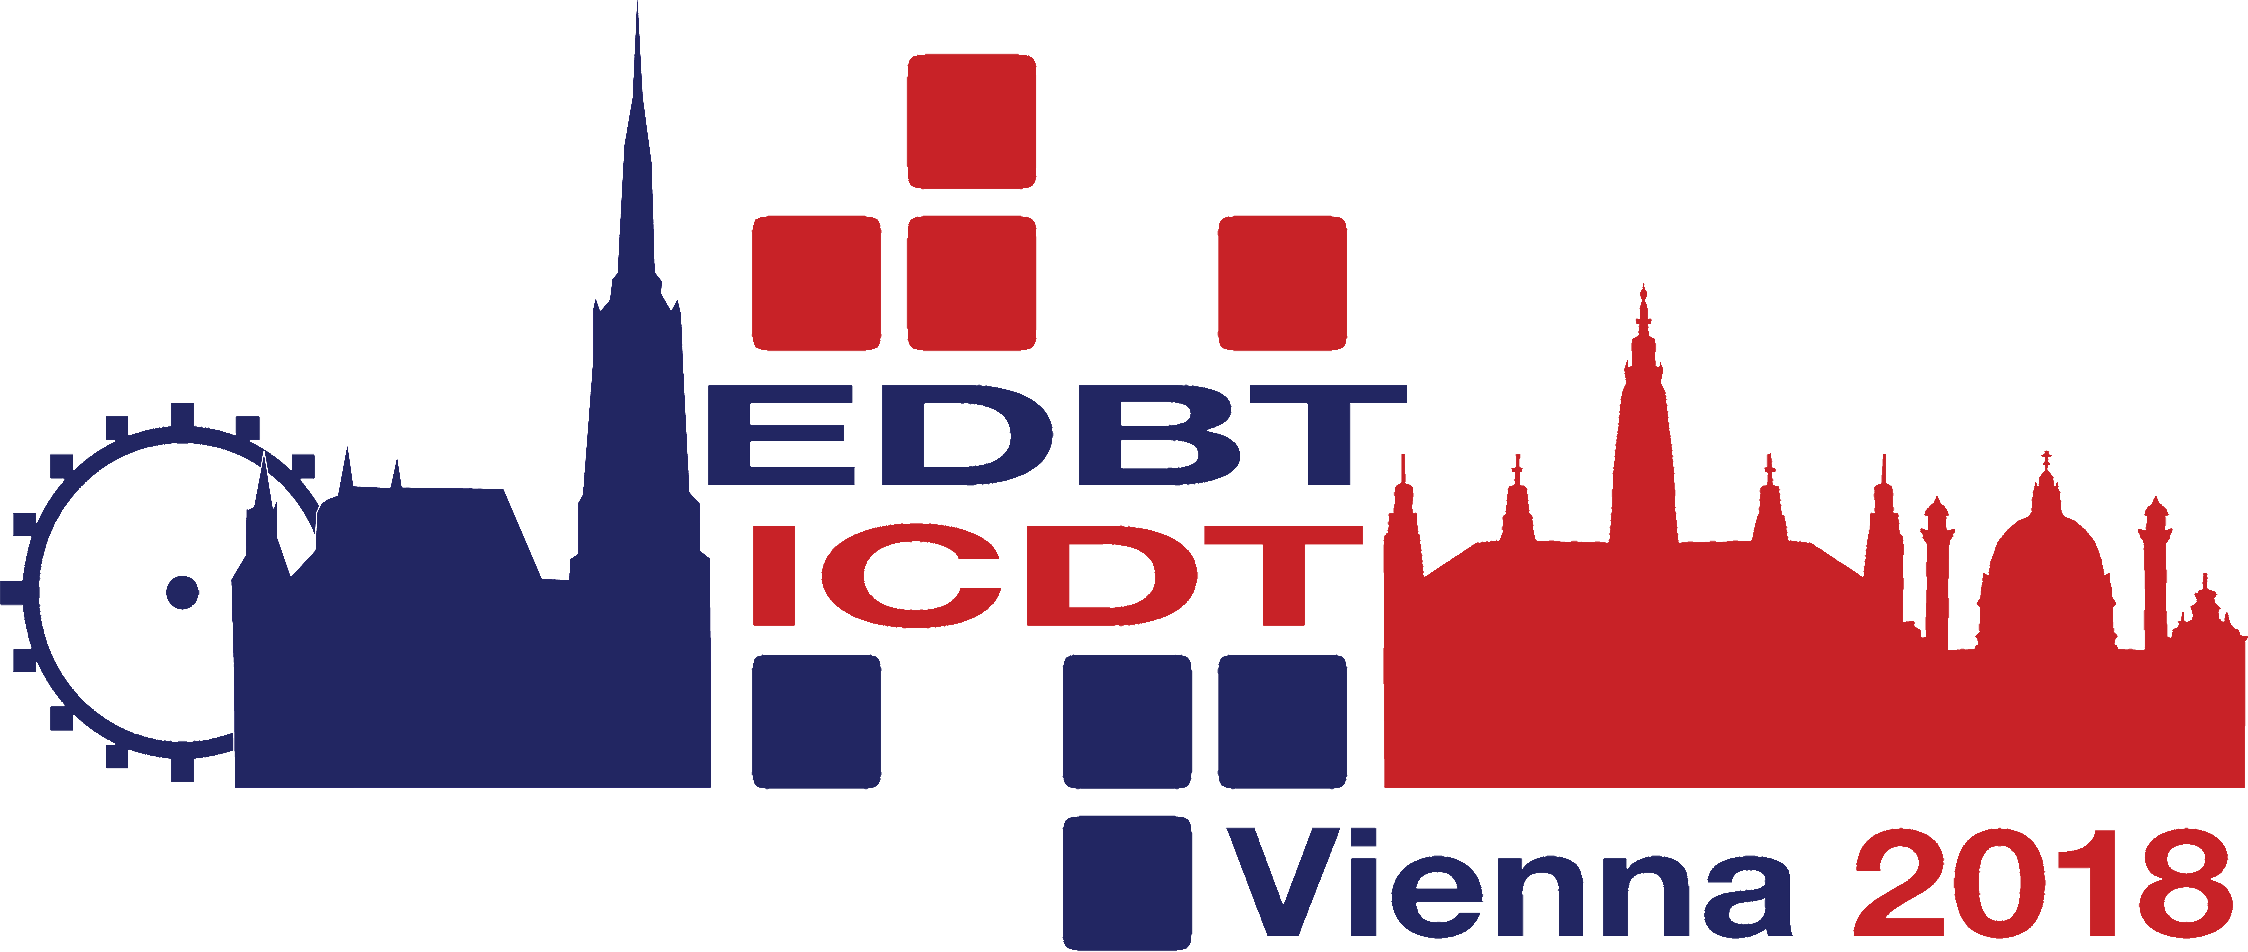 Vienna Logo - EDBT/ICDT 2018 Joint Conference - March, 2018 - Vienna, Austria